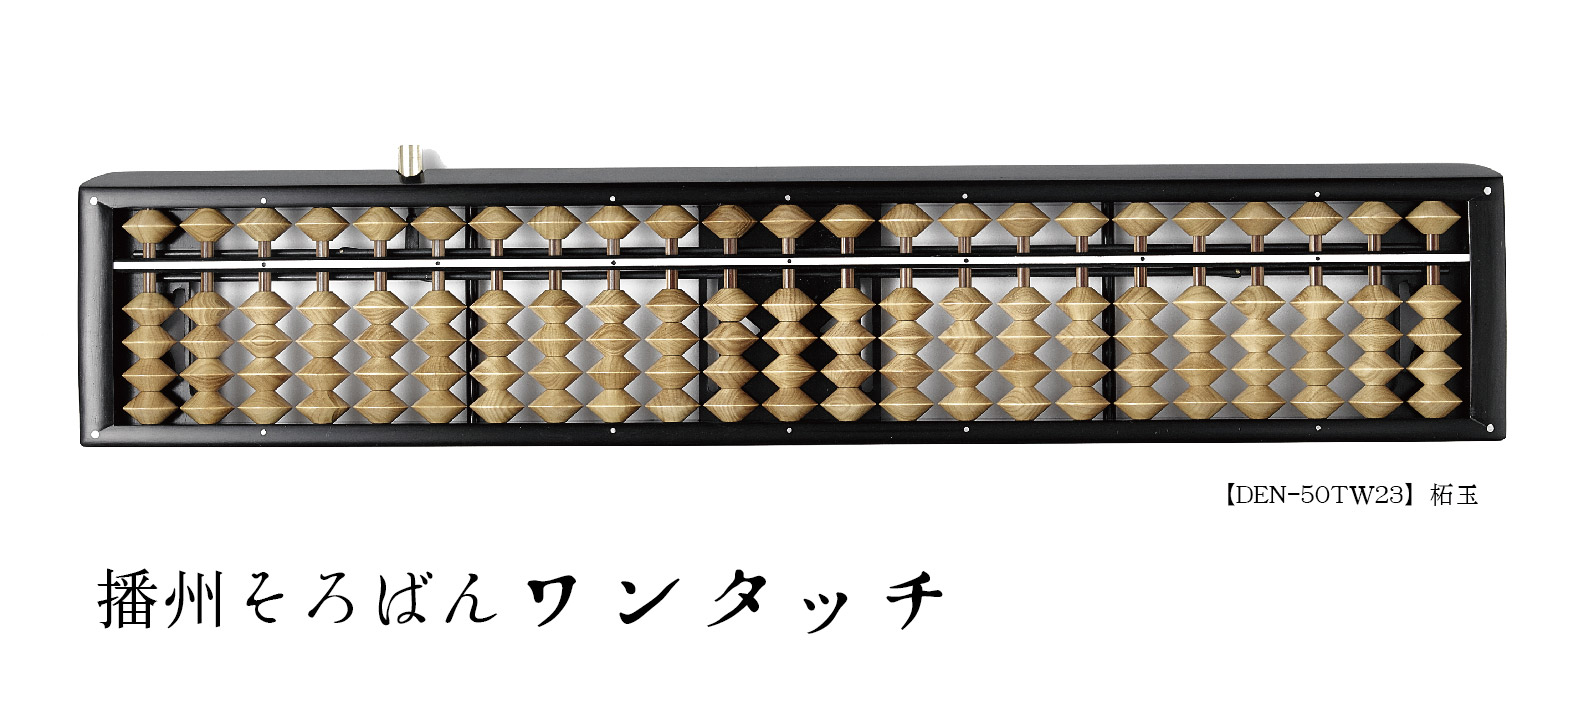 播州そろばん ワンタッチ【Banshu abacus One touch】 | 株式会社 ...